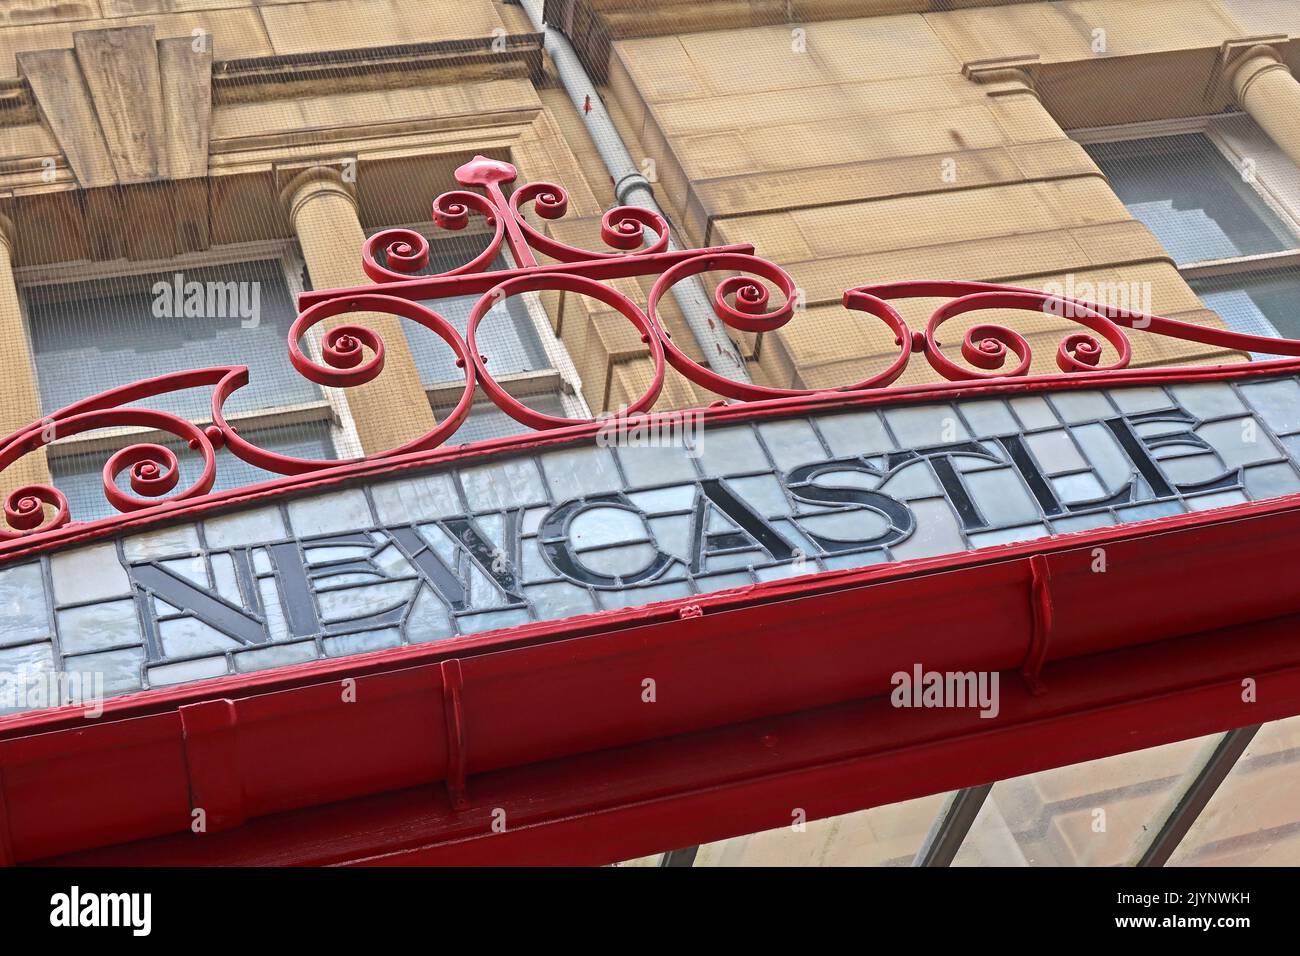 Newcastle - Jugendstil, Schriftzüge, die M&LR- und L&YR-Ziele auf einem kunstvollen Glas- und Eisendach zeigen, Bahnhof Manchester Victoria Stockfoto